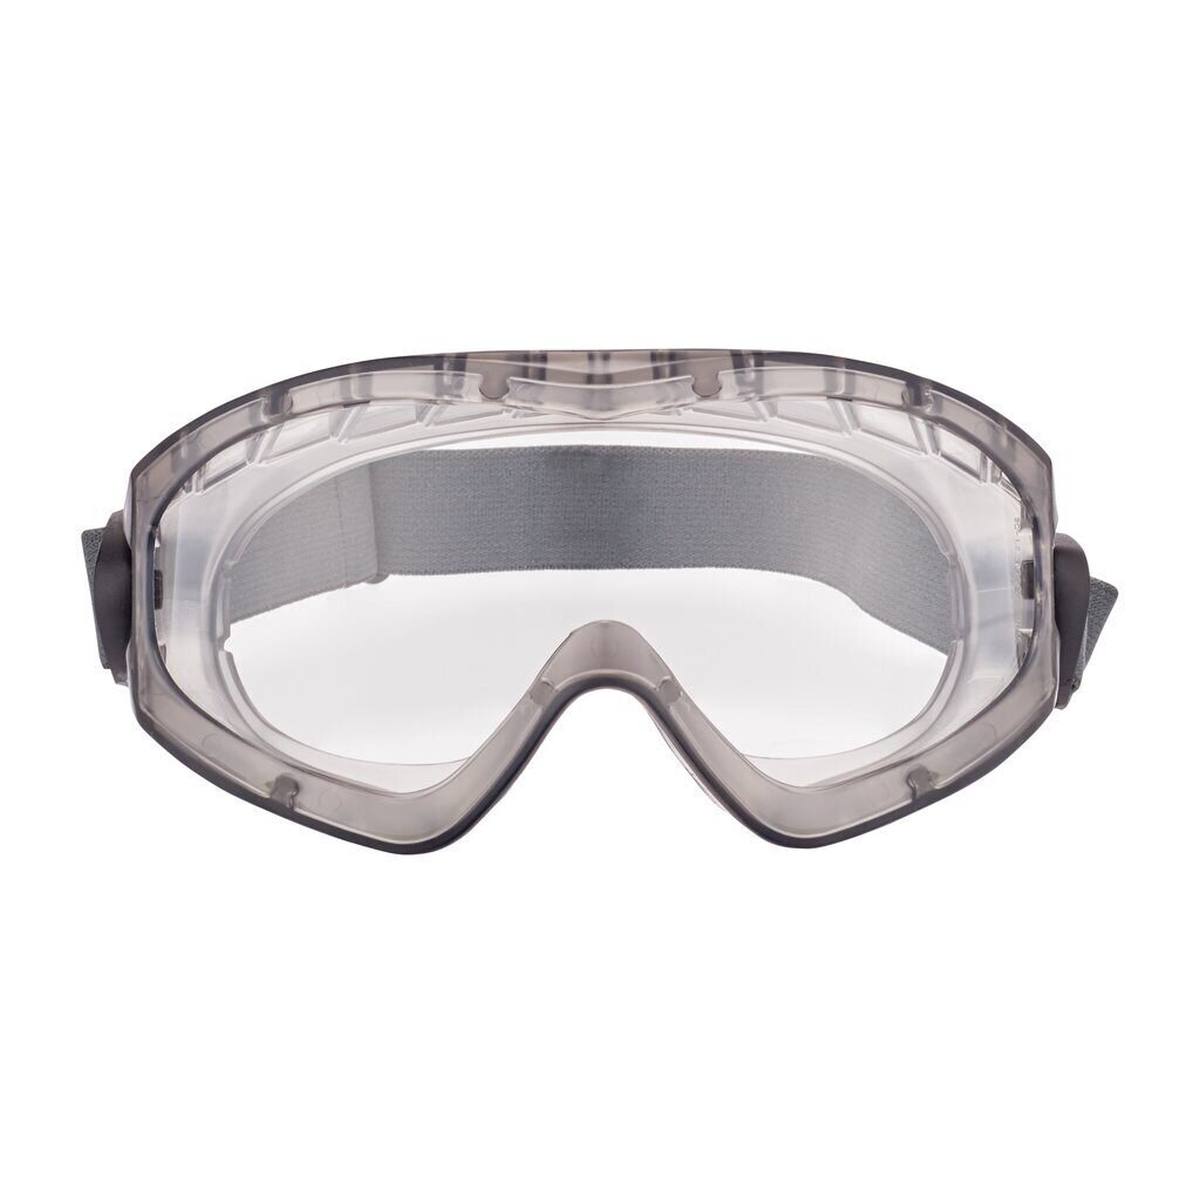 3M 2891S-SGAF Full-vision bril, zonder ventilatiesleuf (gasdicht), verstelbare scharnieren, anticondenscoating